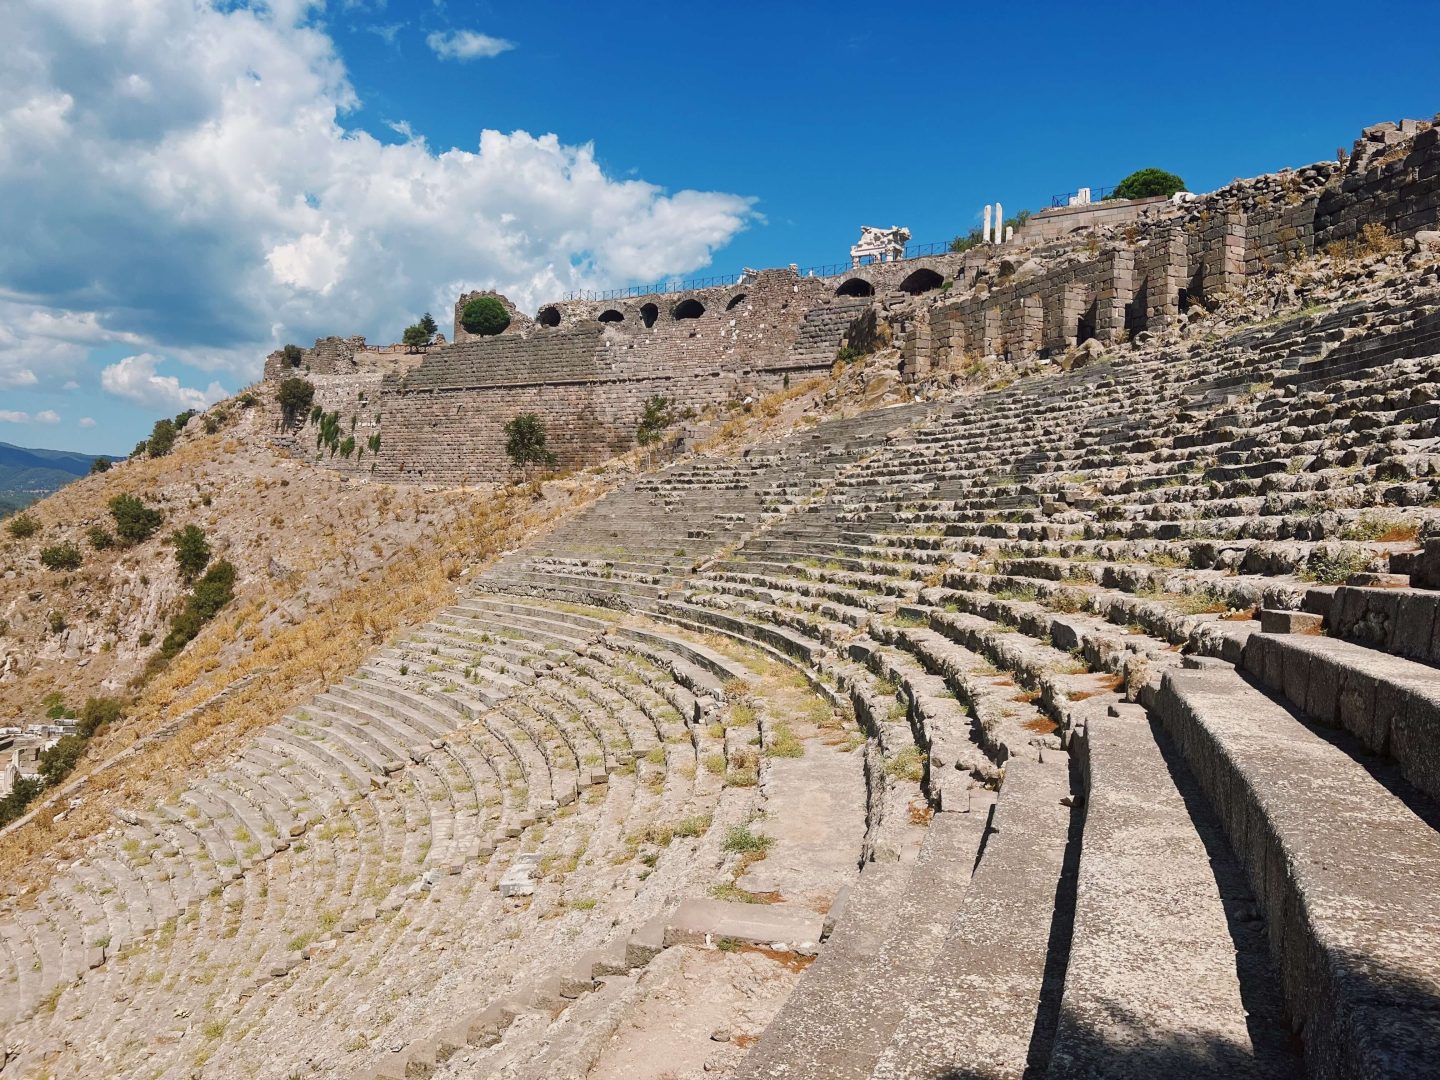 Acropolis of Pergamon theatre